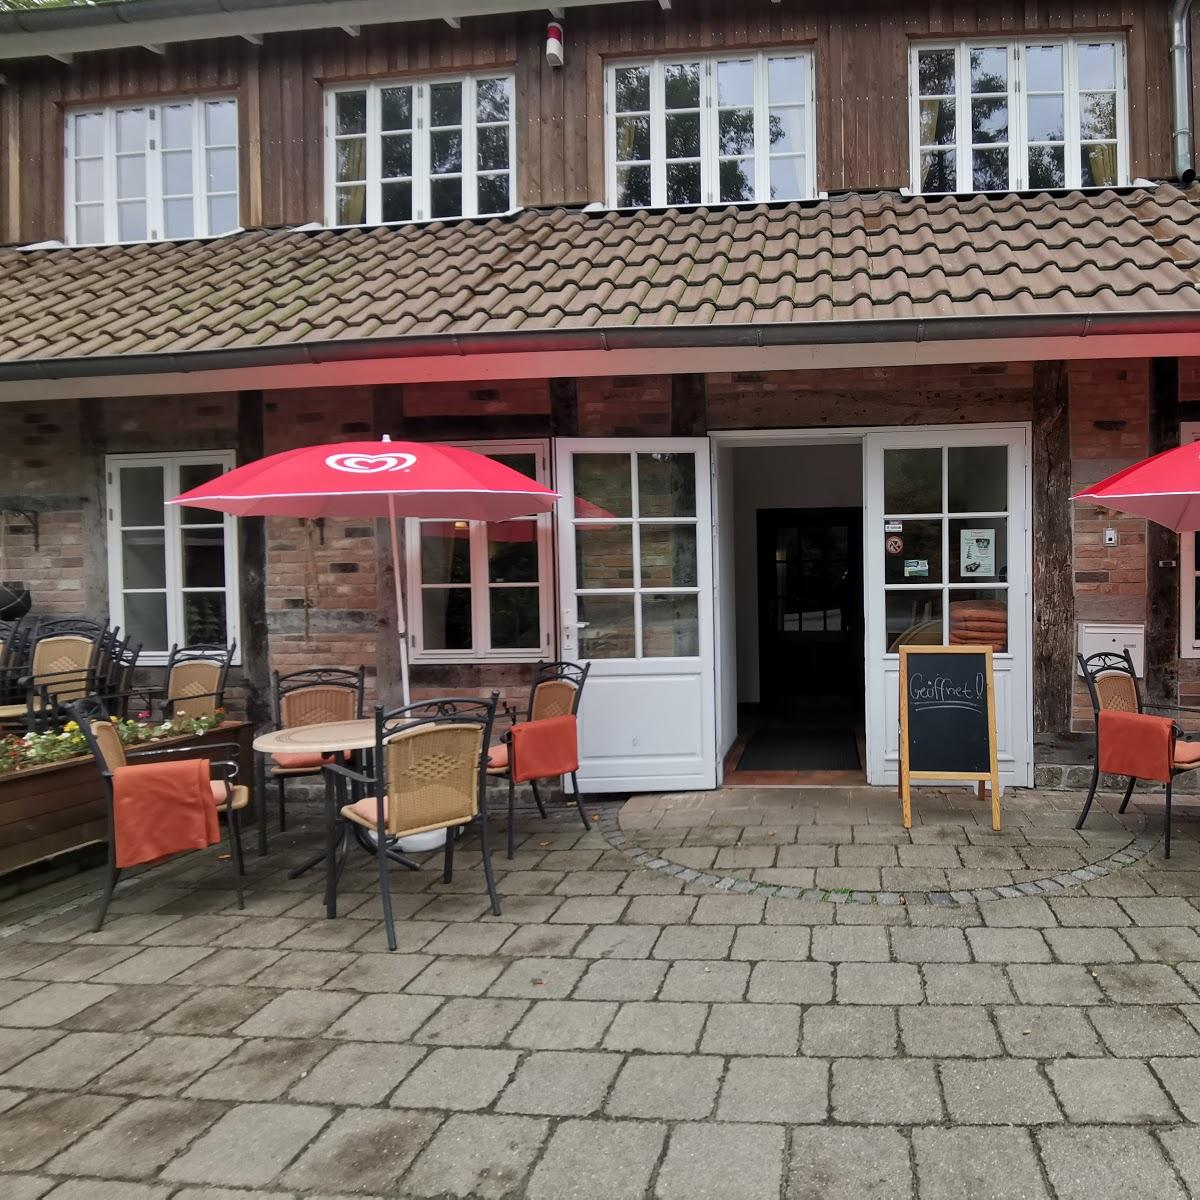 Restaurant "Bootshaus im Bürgerpark" in Bremerhaven